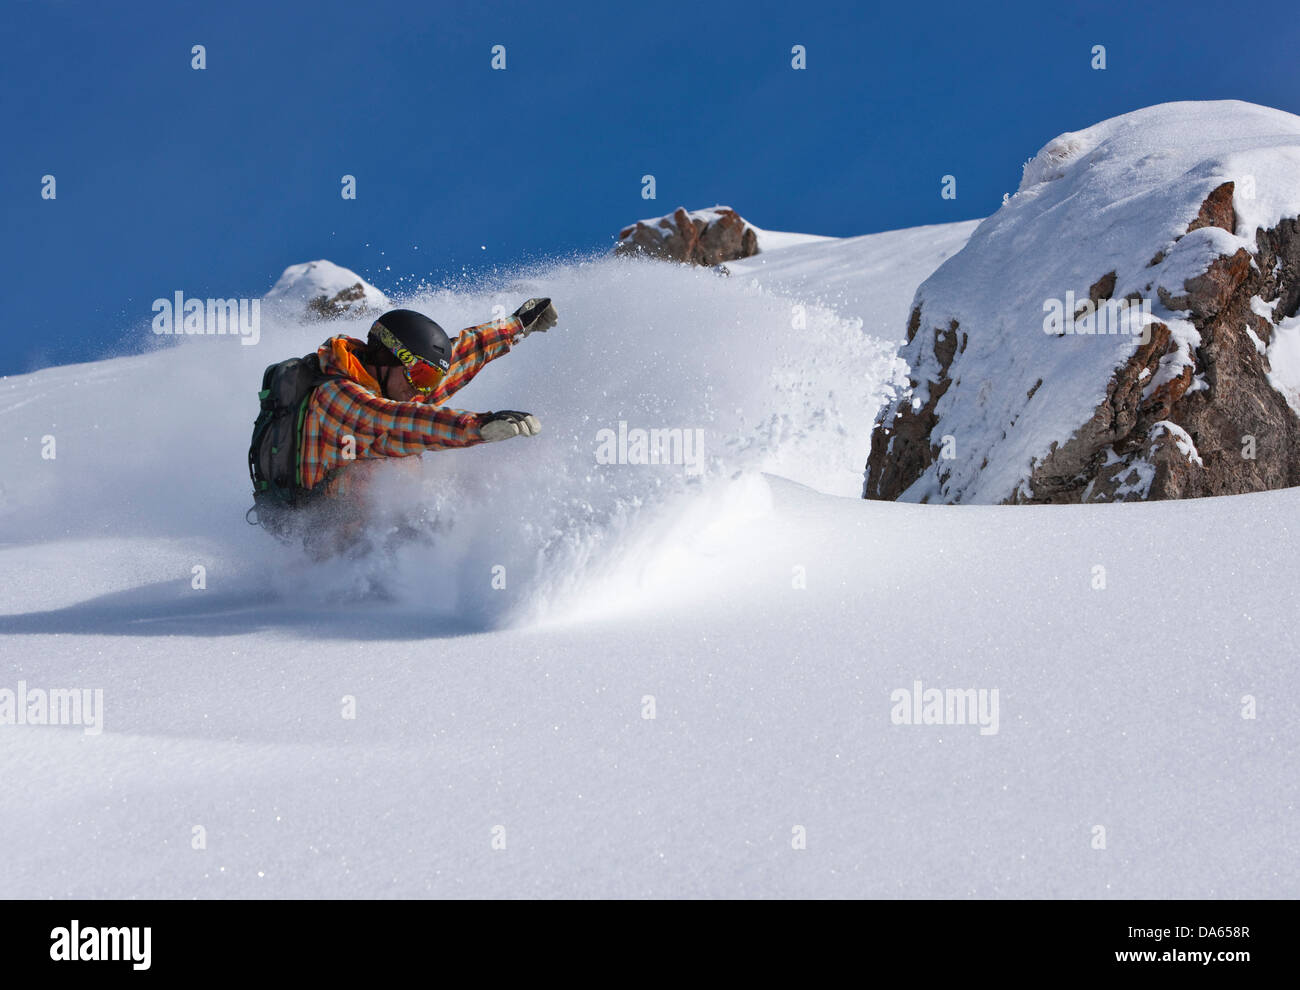 Snowboard, Arosa, montagne, montagne, hiver, canton, GR, Grisons, Grisons, snowboard, snowboard, sports d'hiver, Suisse Banque D'Images